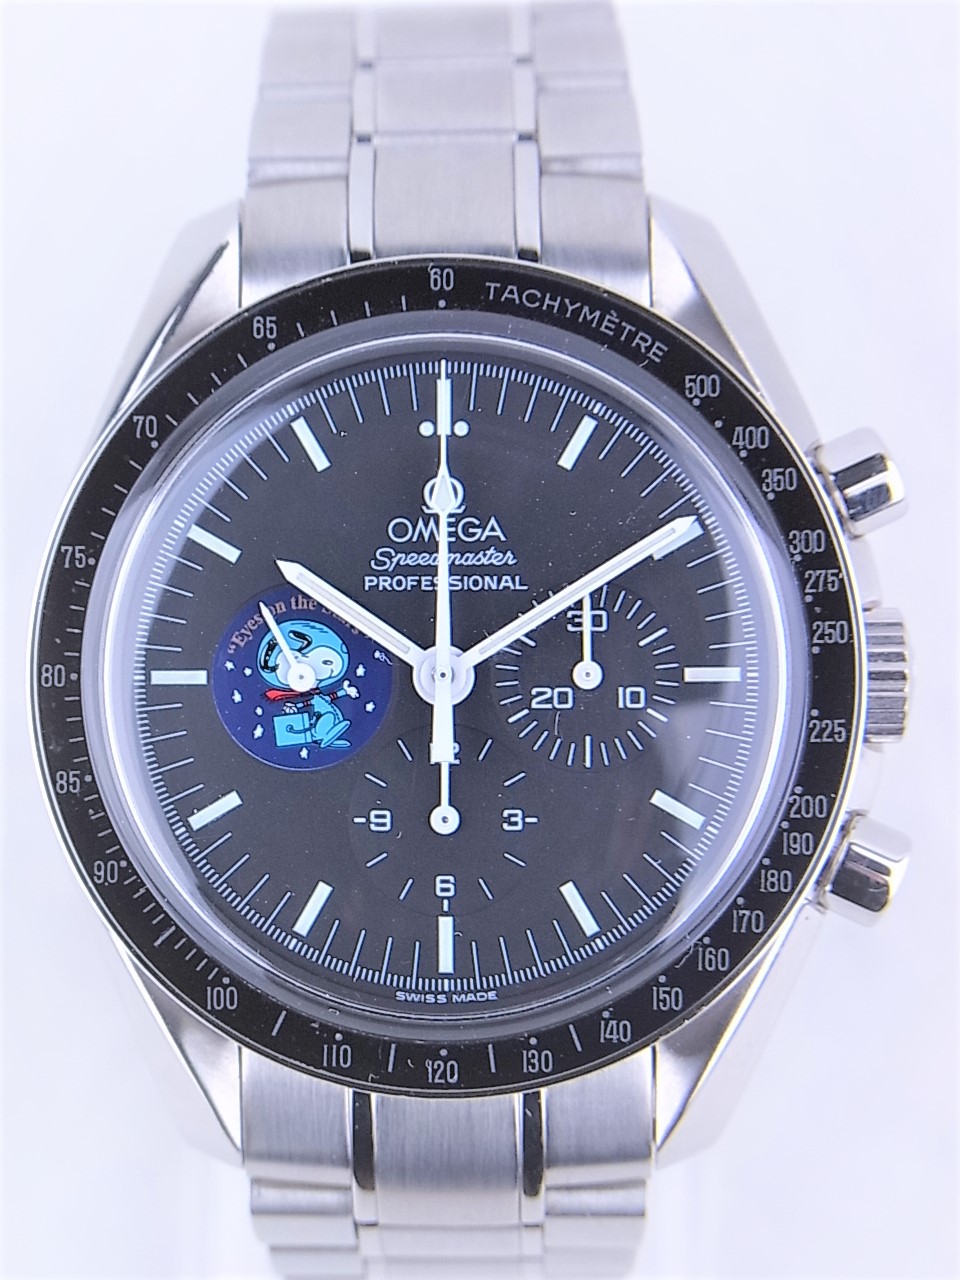 オメガスピードマスタープロフェッショナル世界5441本限定スヌーピーアワードエディション3578 51を最安値価格で販売中 ブランド時計販売のクエリ